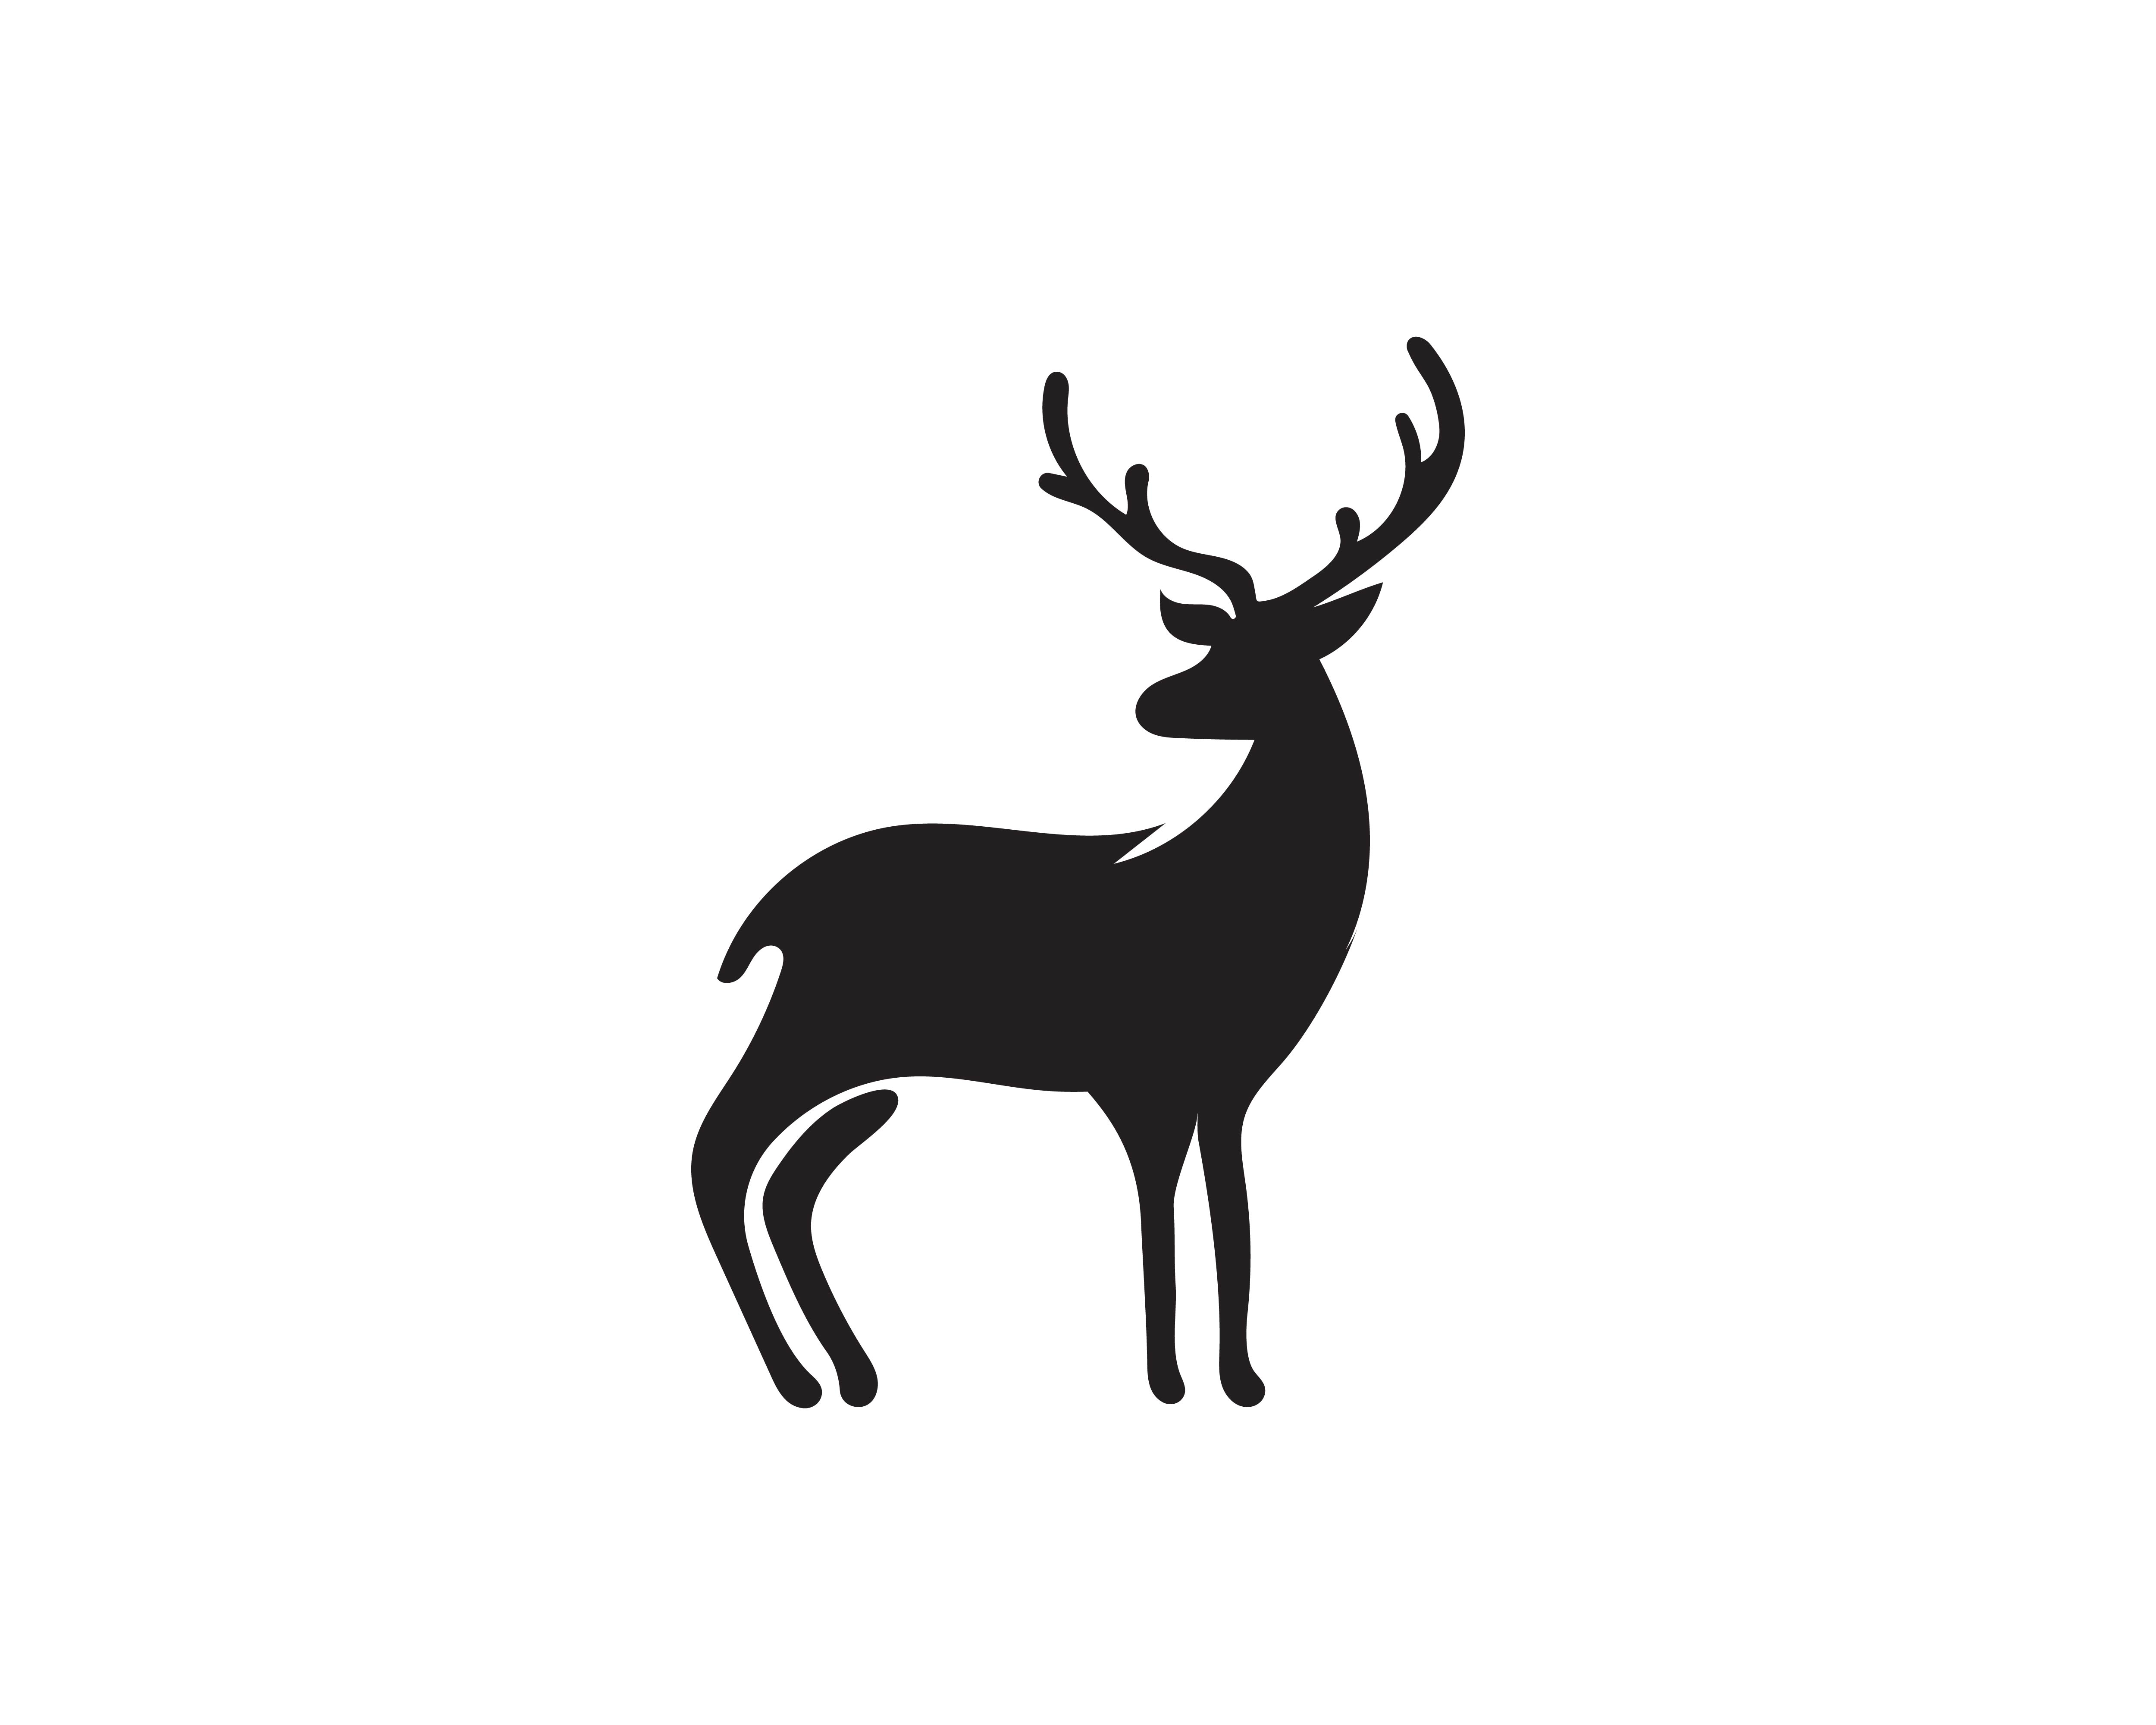 Download Deer vector icon illustration design 596841 - Download Free Vectors, Clipart Graphics & Vector Art